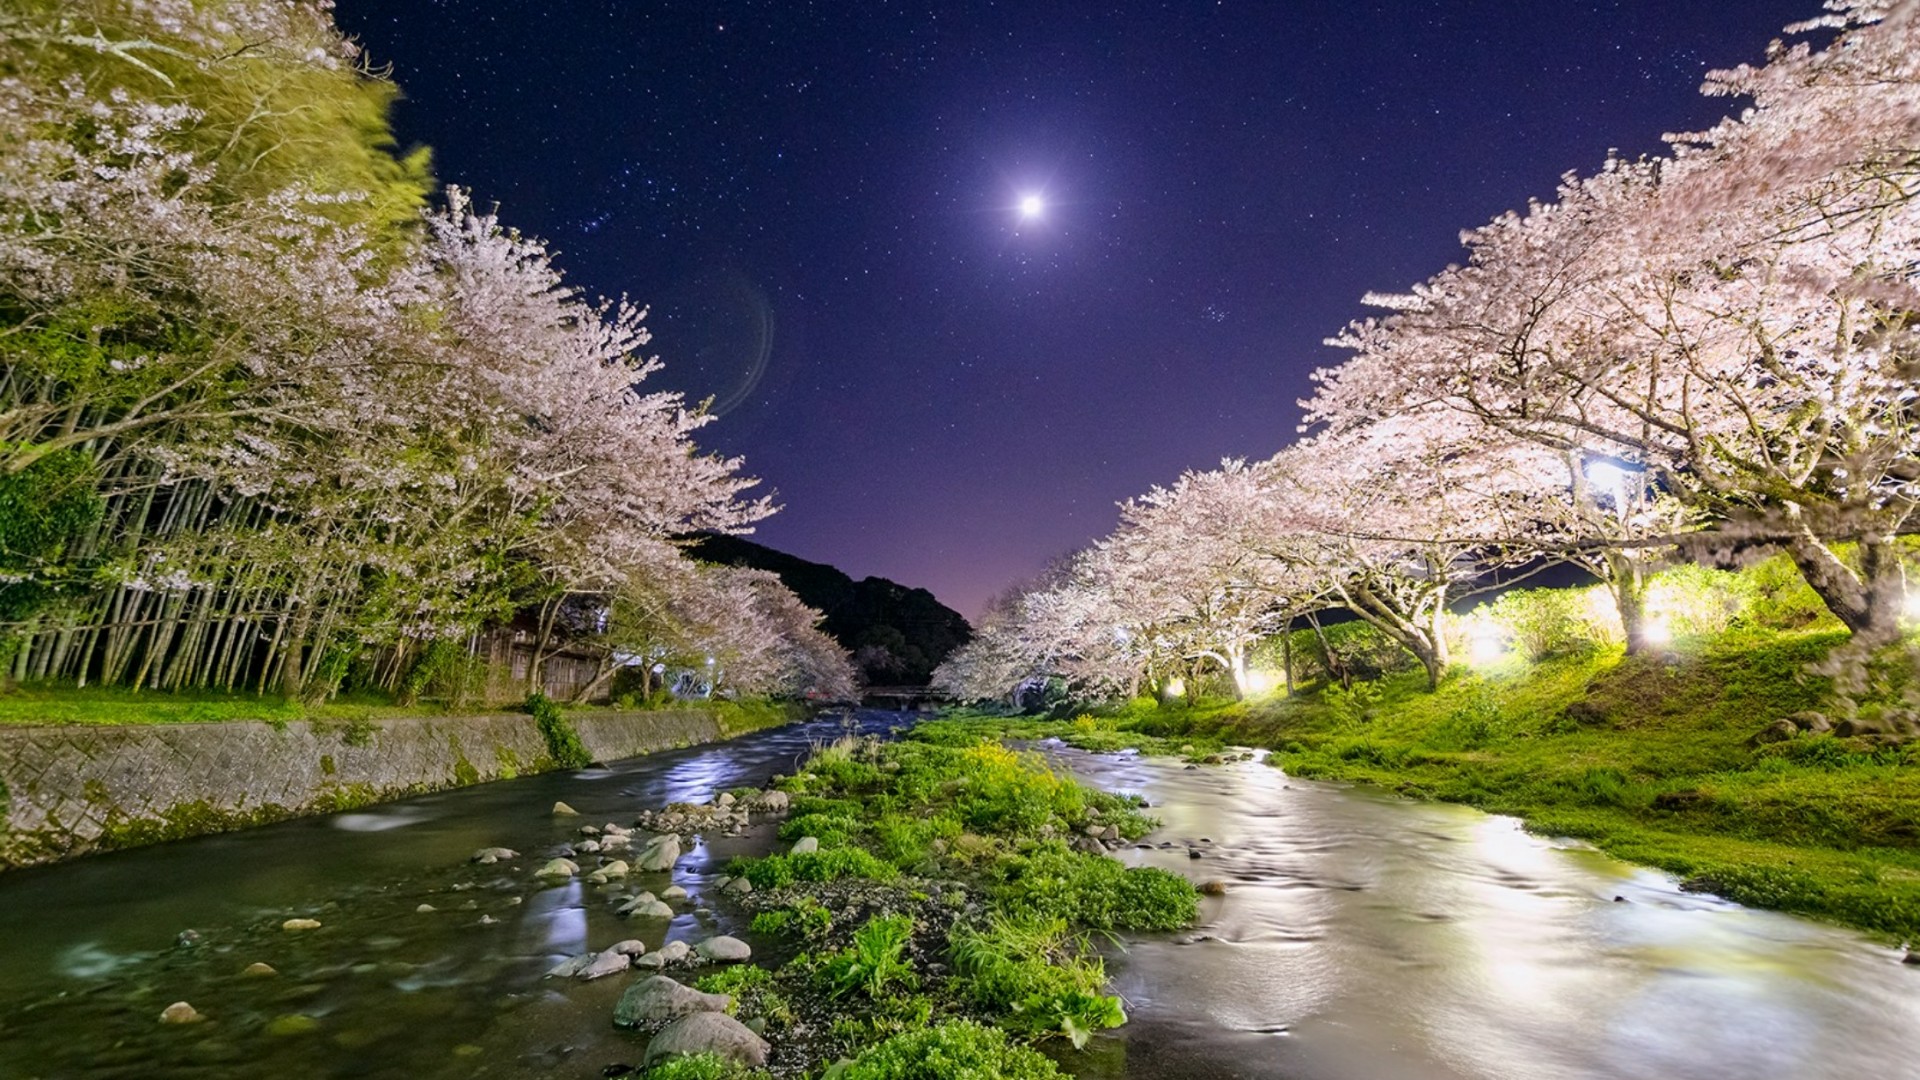 Japan cherry blossom over Nakagawa River at night wallpaper - backiee